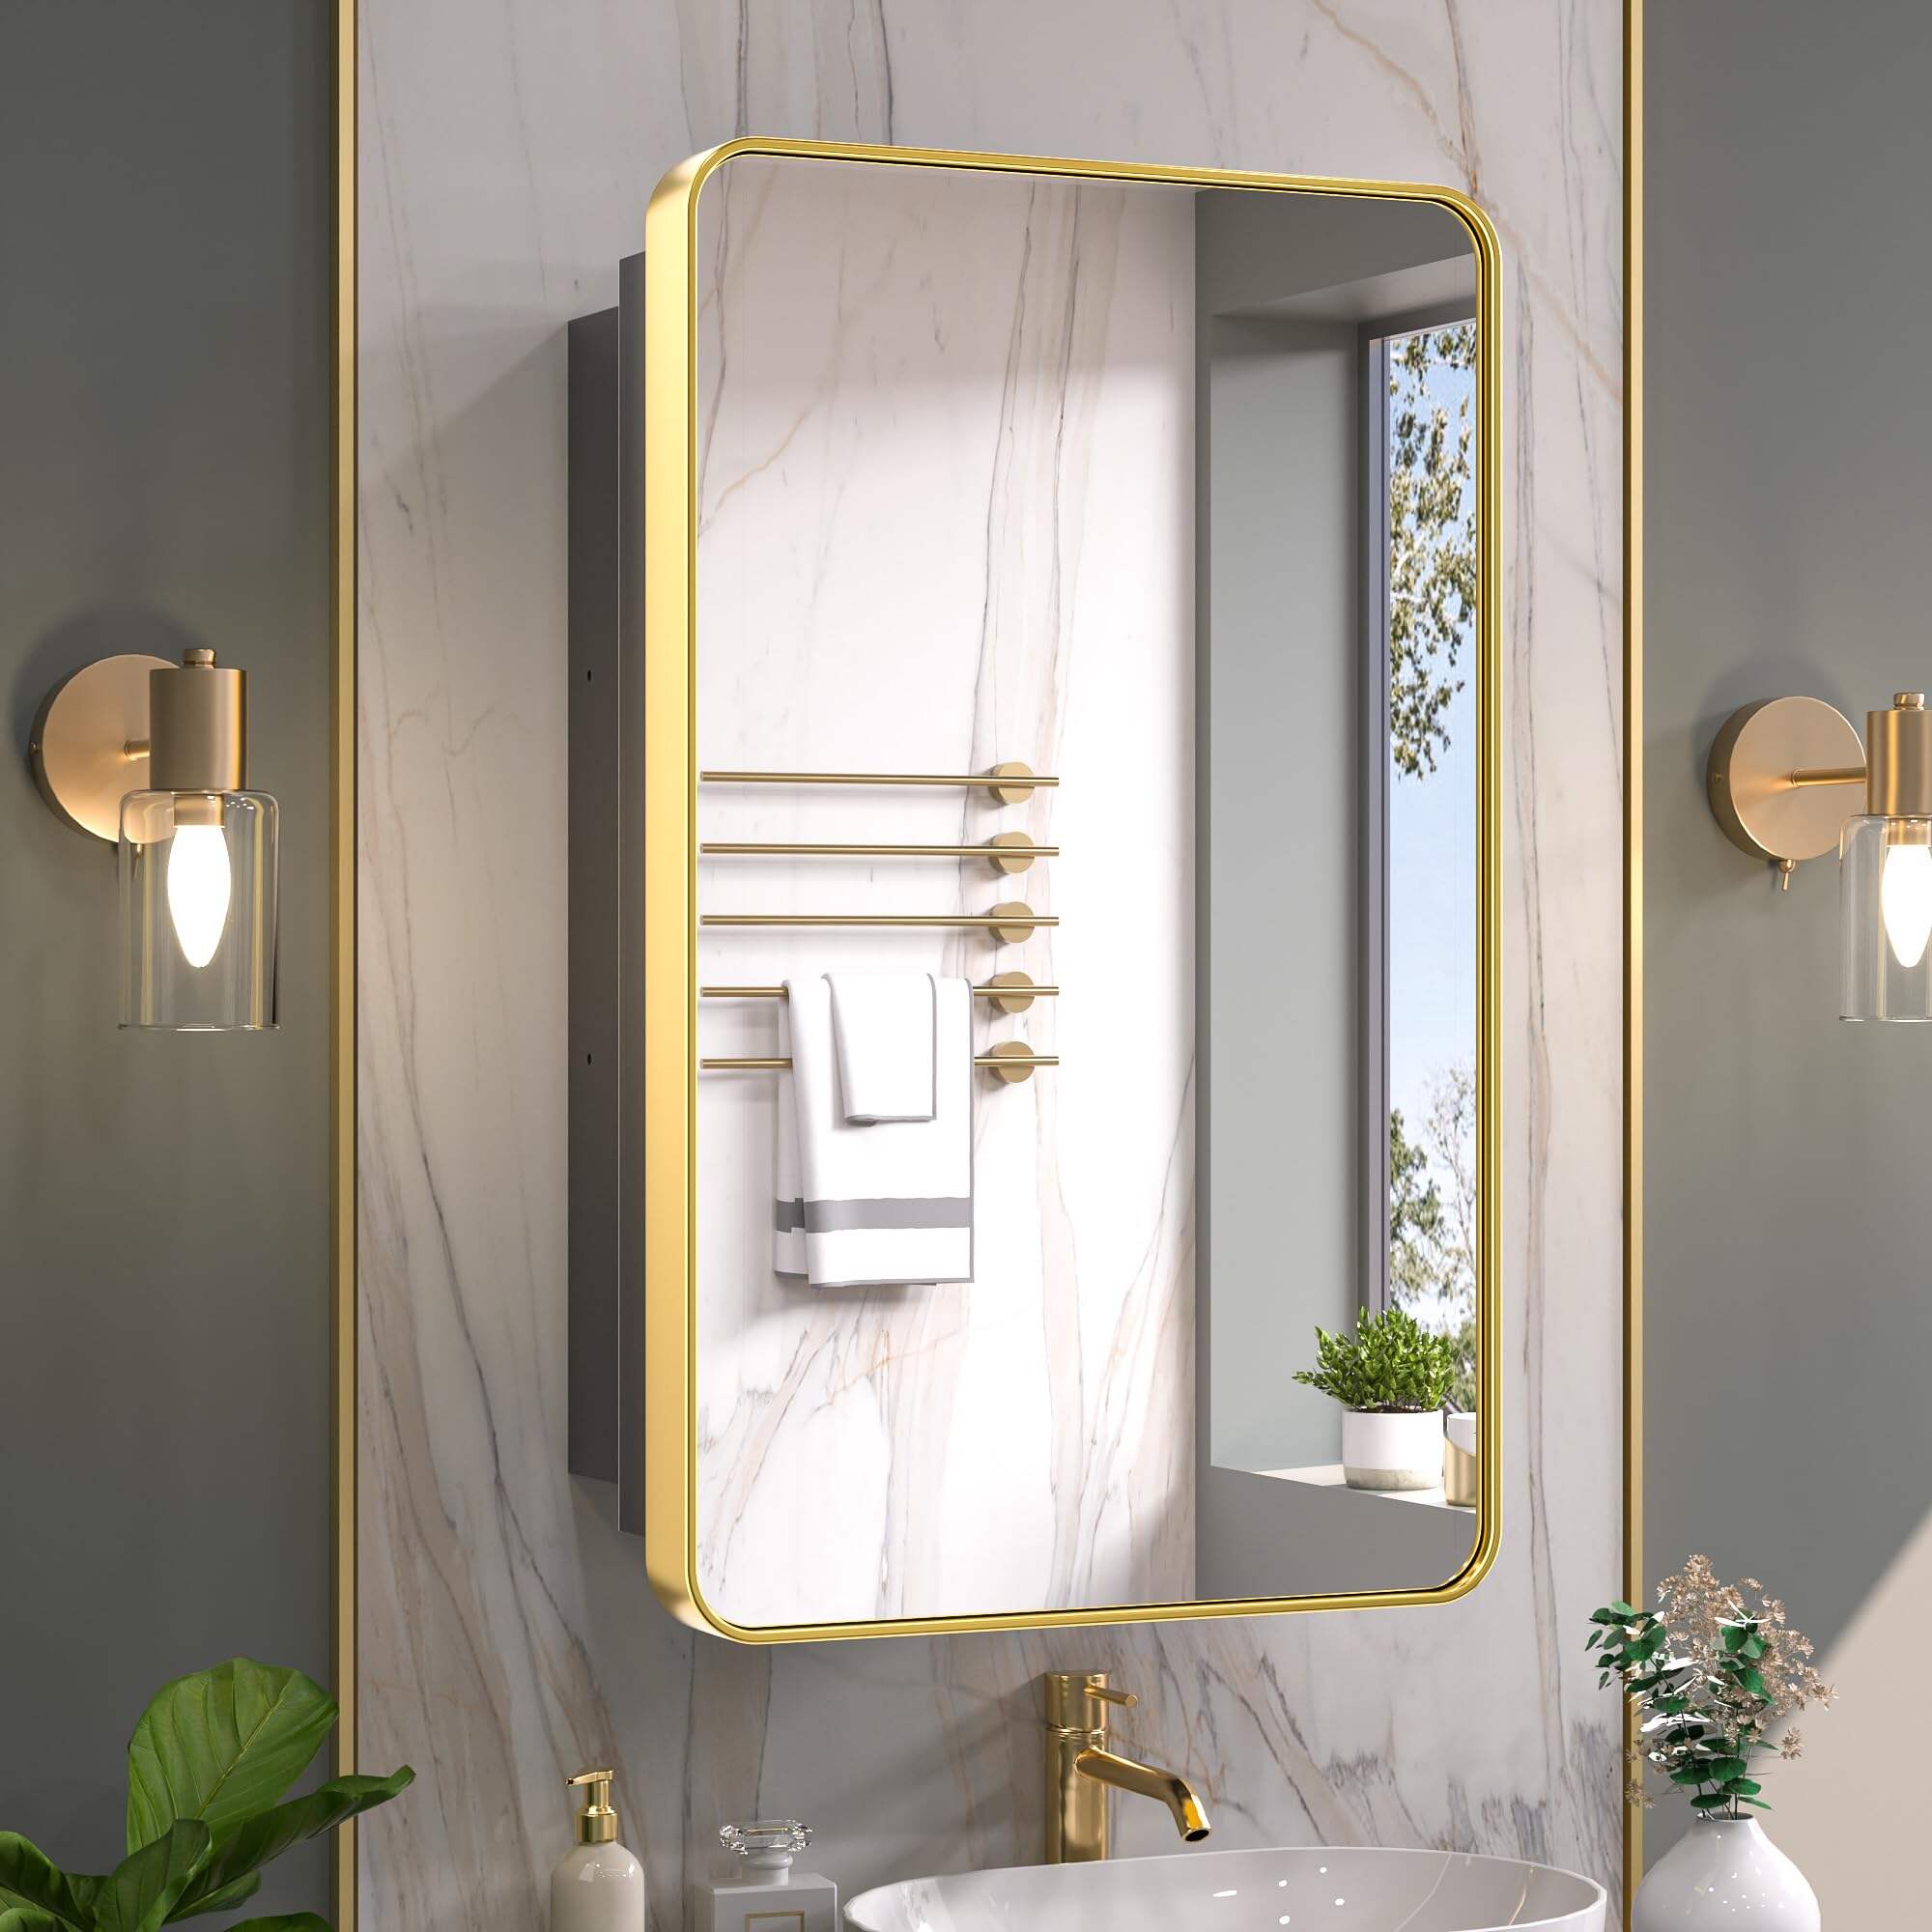 Foshan Haohan Smart Home Co., Ltd. 20 х 32 инчийн толин тусгалтай алтан эмийн шүүгээ Угаалгын өрөөний тохируулгатай тавиуртай Зэвэрдэггүй ган хүрээтэй, нэг хаалгатай дугуй хэлбэртэй тэгш өнцөгт хананд суурилуулсан, тольтой угаалгын өрөөний хадгалах шүүгээ